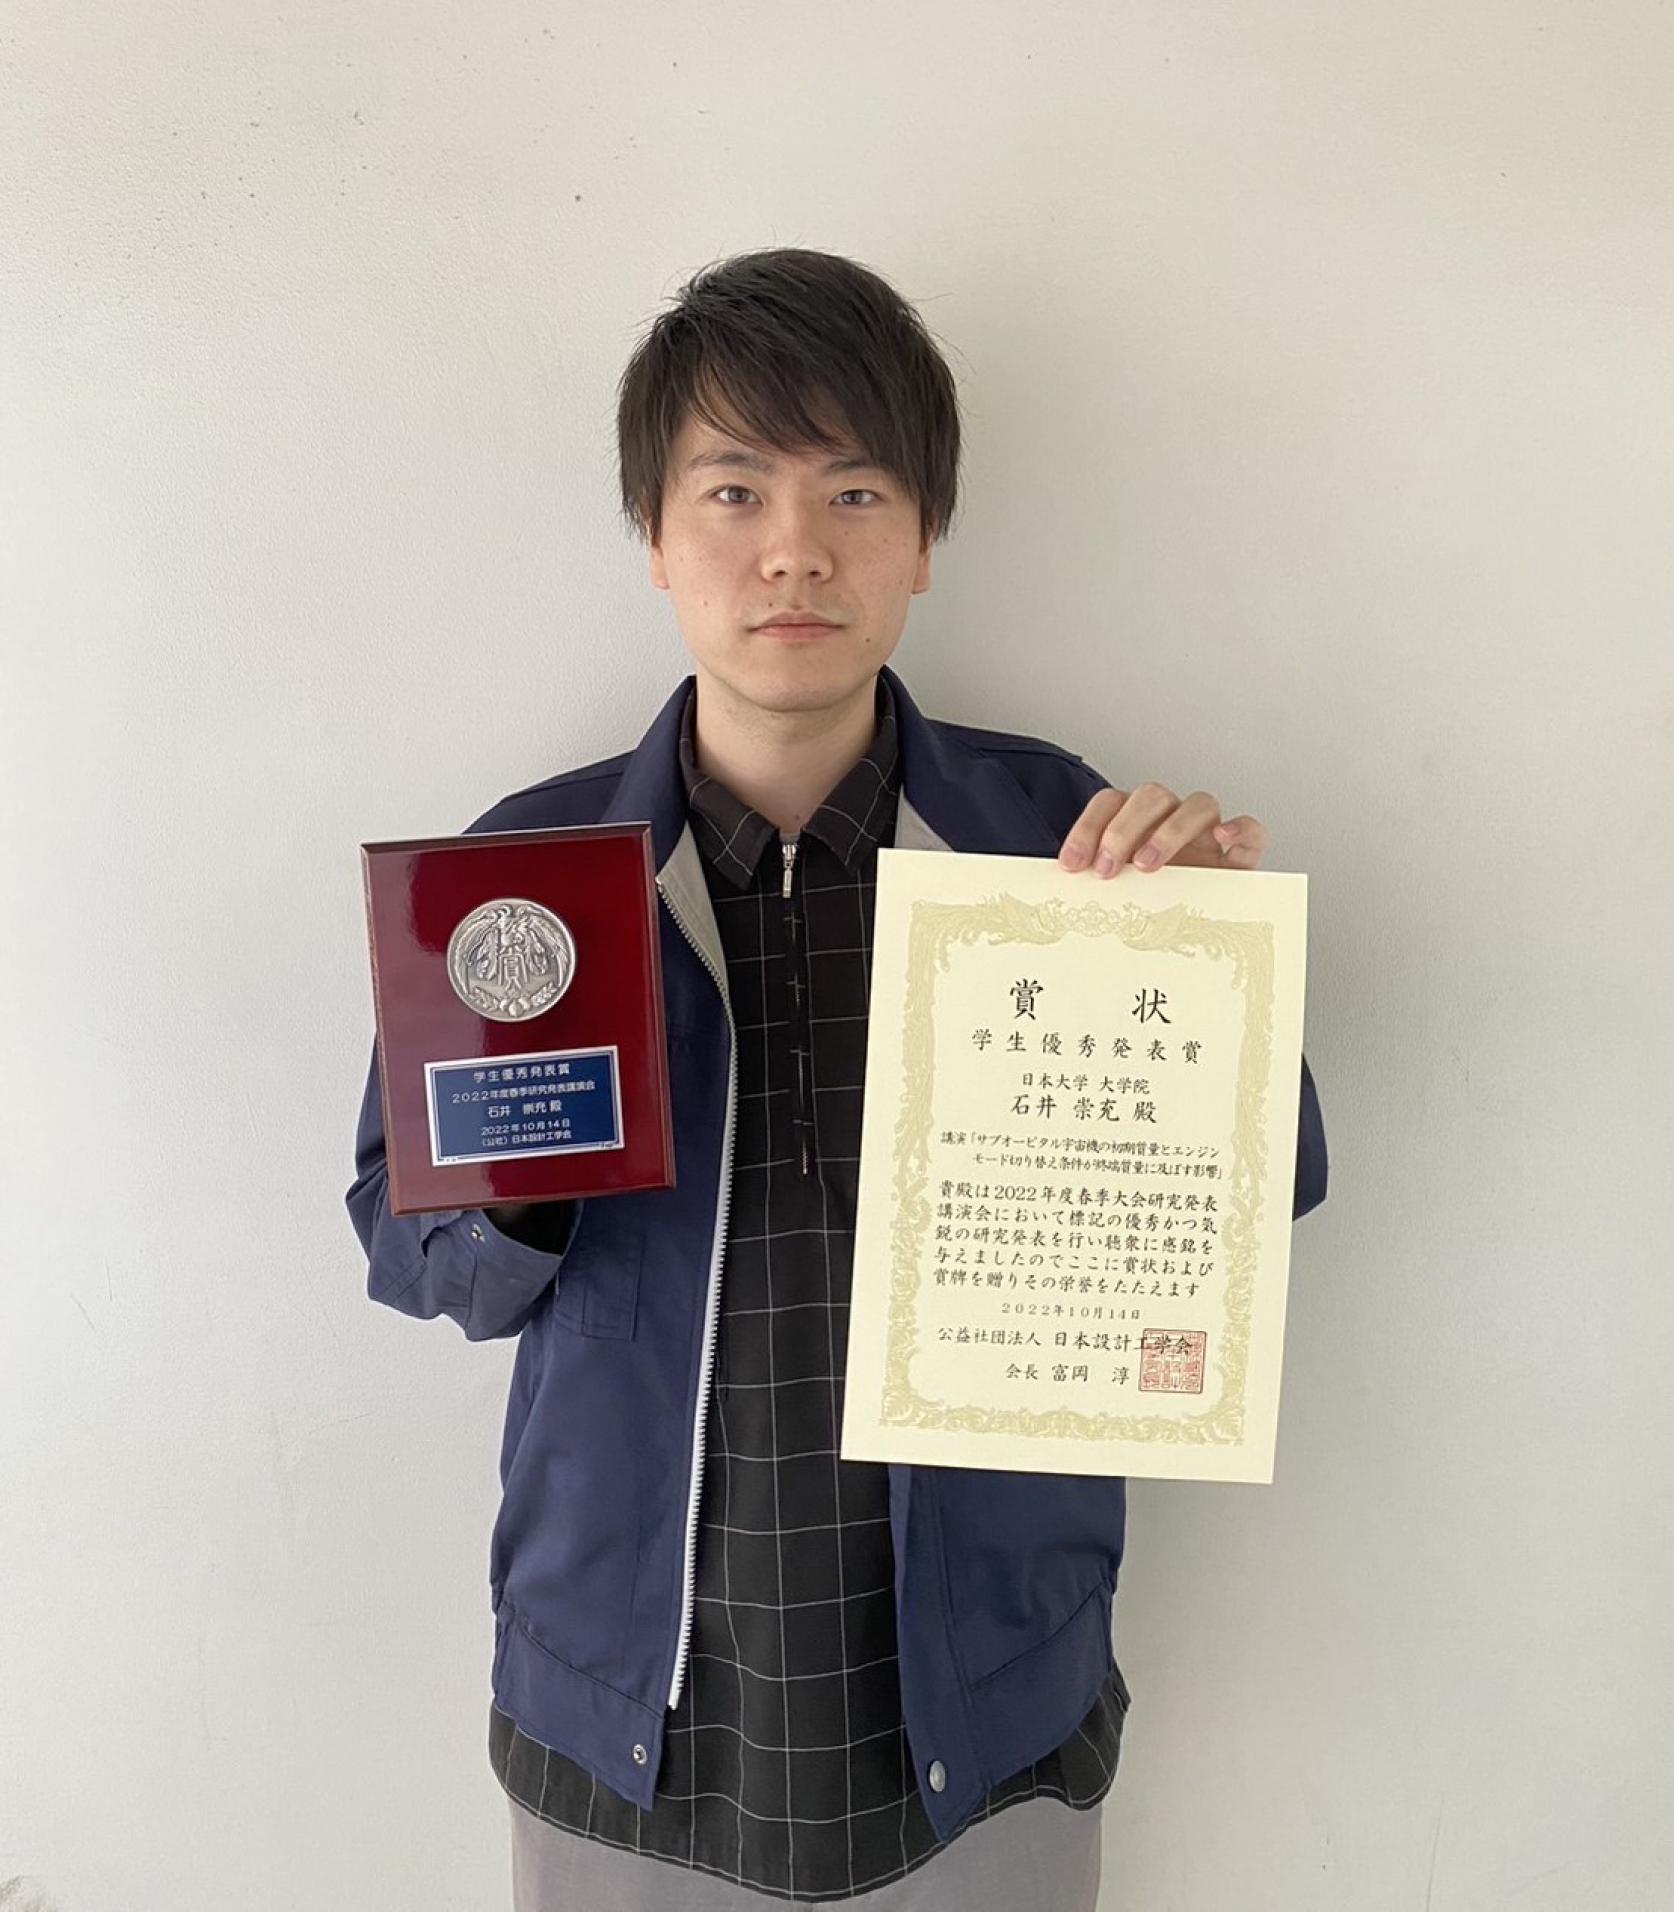 精密機械工学専攻2年の石井崇充さんが、日本設計工学会2022年度春季大会研究発表講演会において学生優秀発表賞を受賞しました。